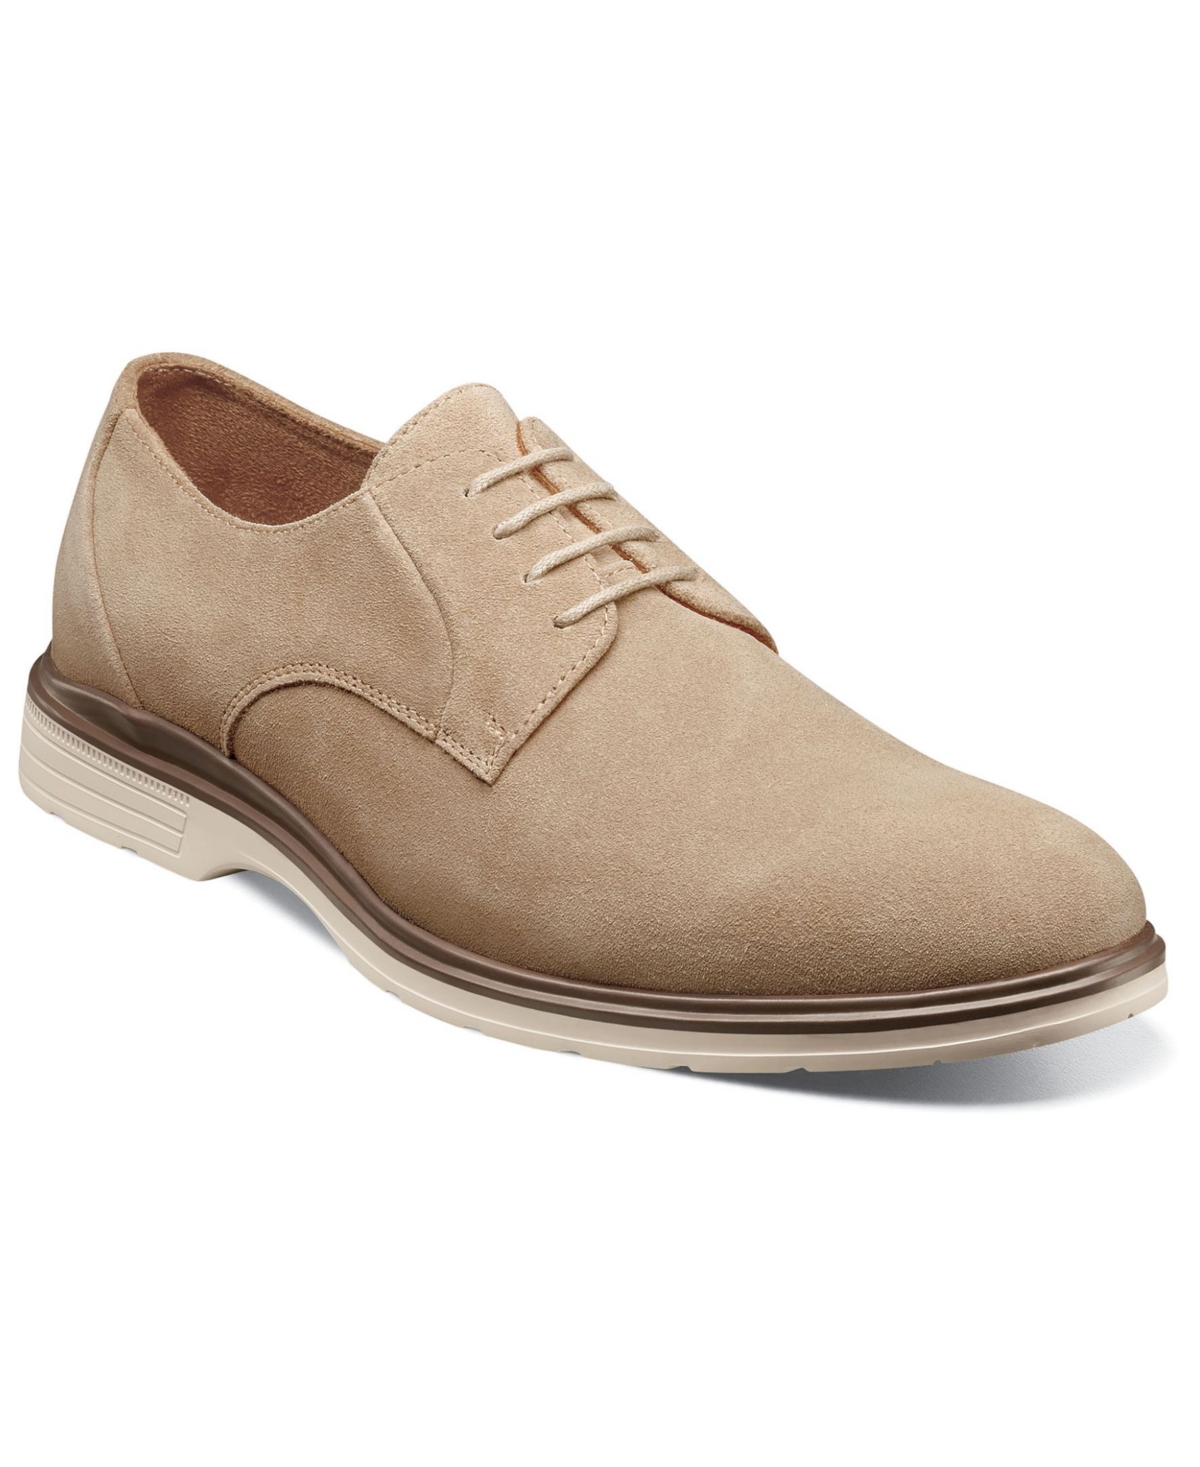 Men's Tayson Plain Toe Oxford Shoes - Sandstone